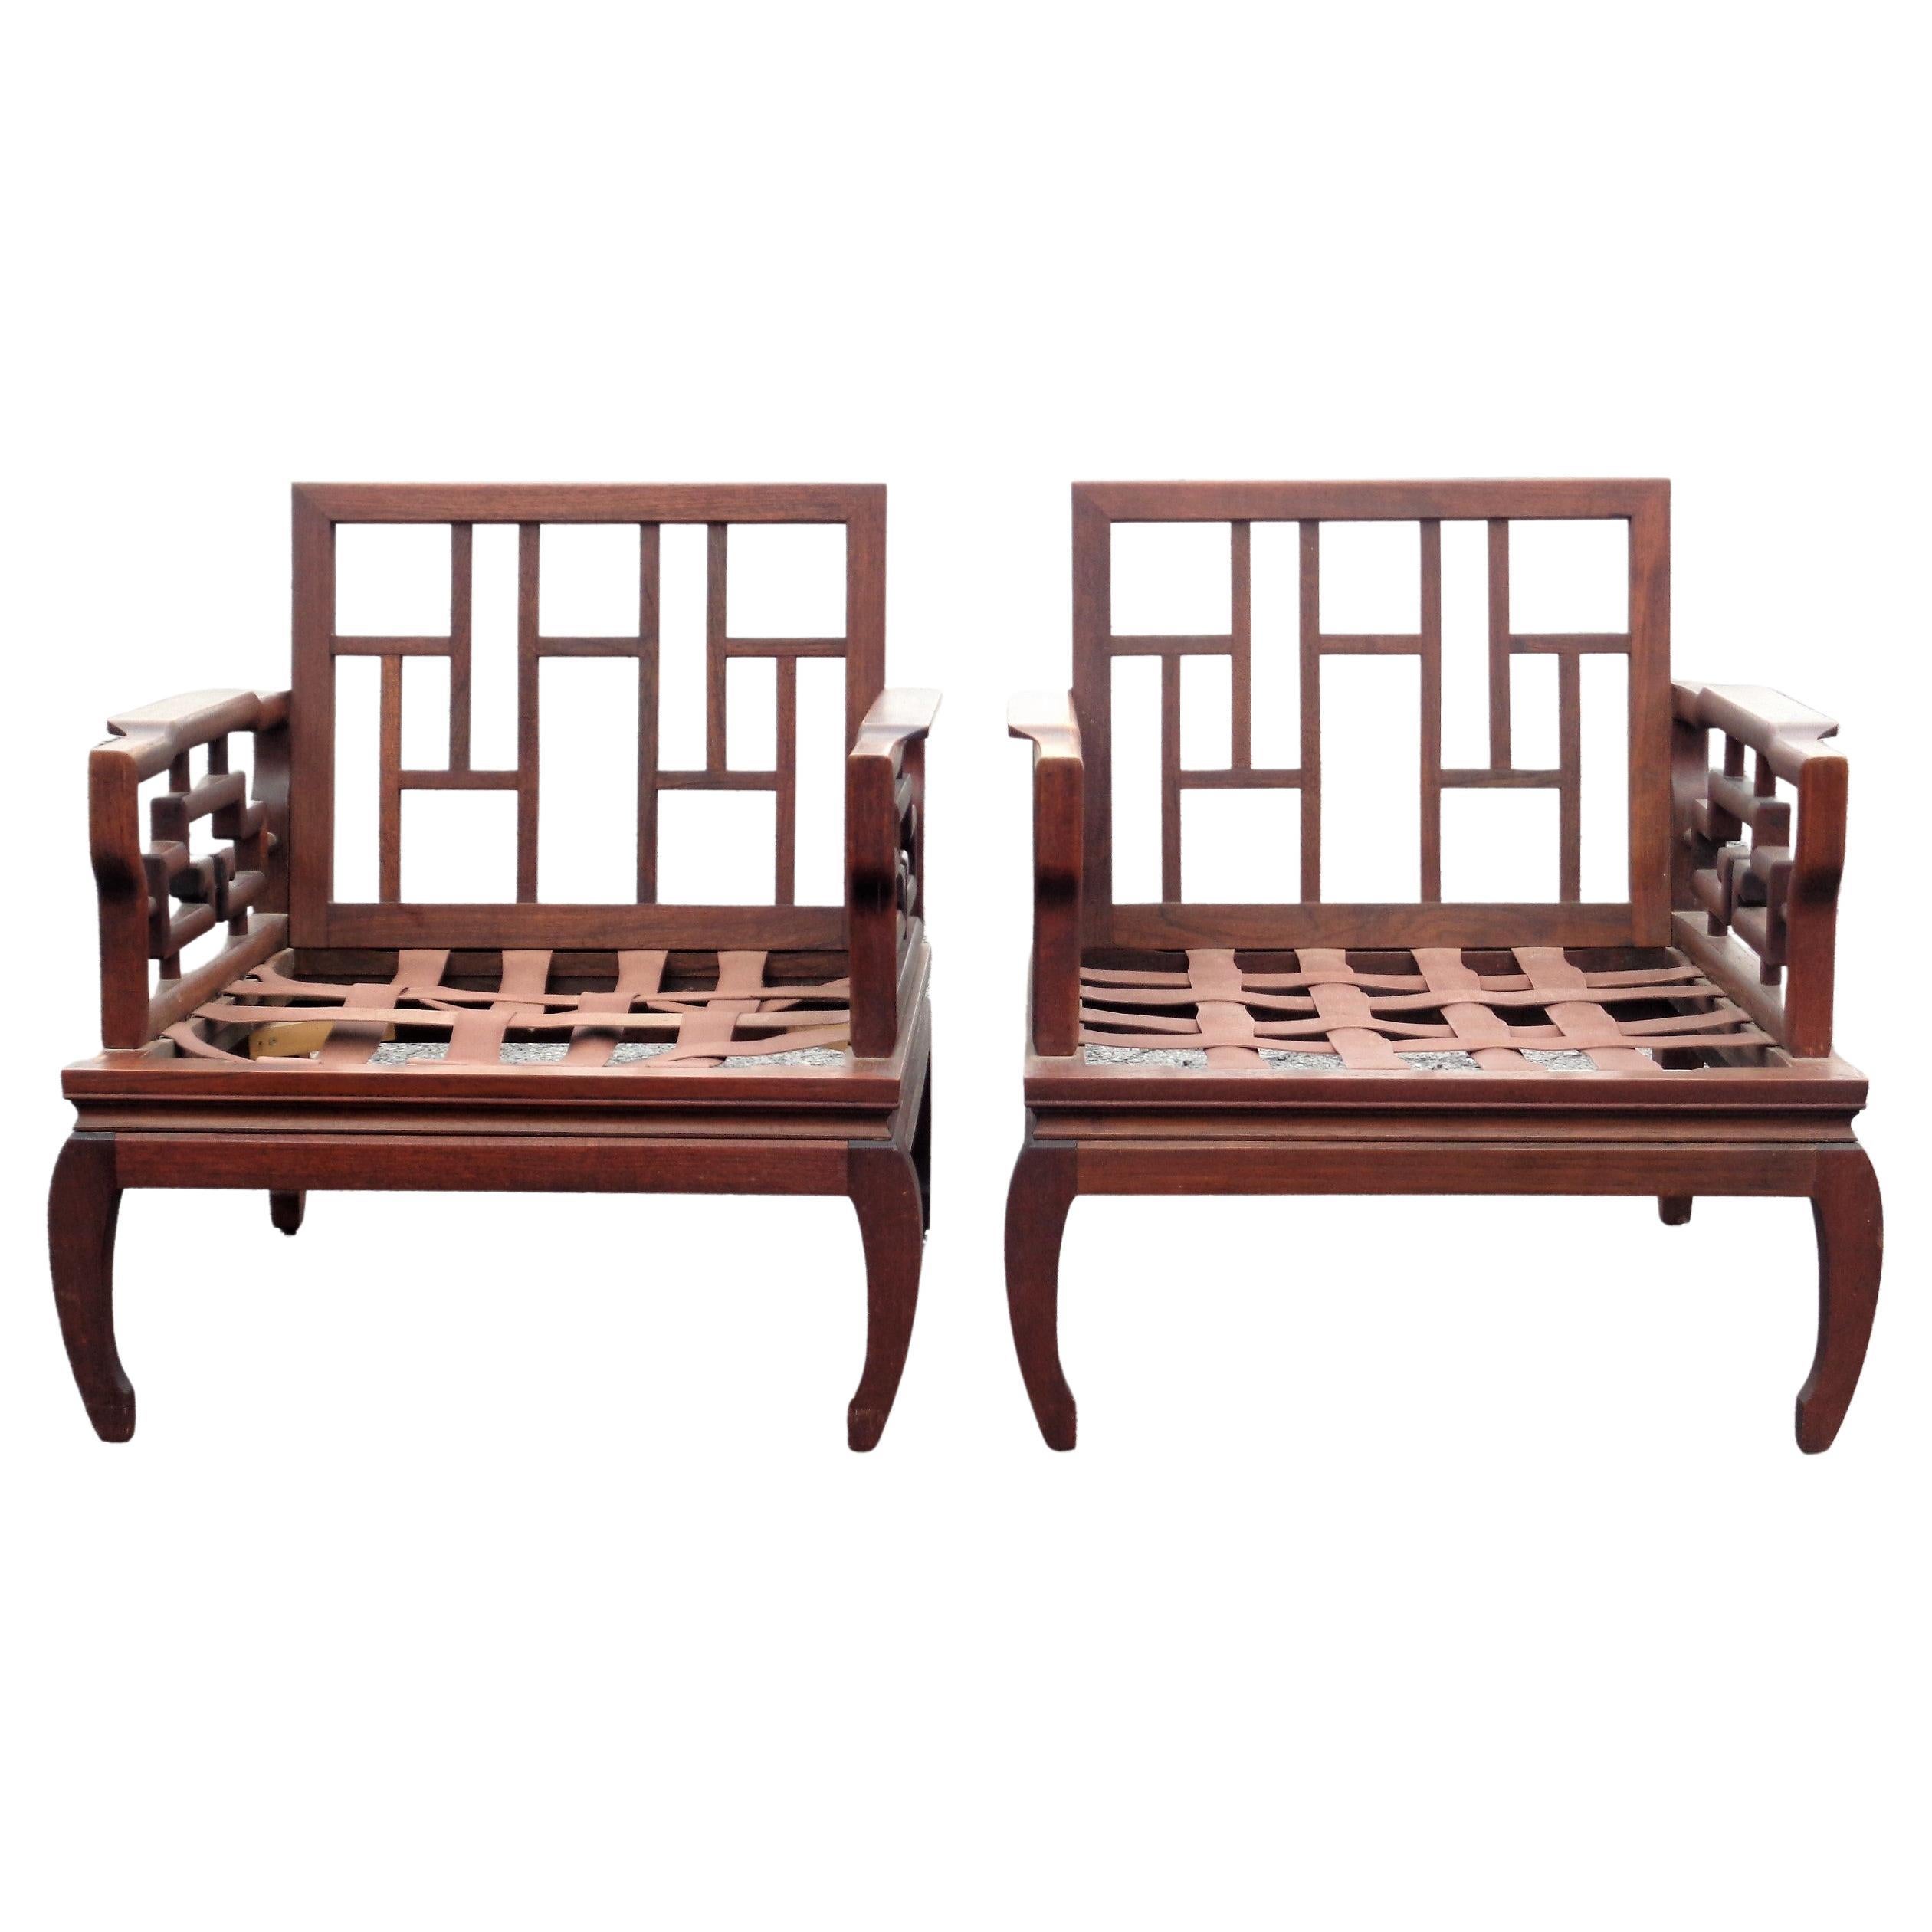 Ein sehr elegantes Paar von asiatischen Ming-Stil handgeschnitzten Mahagoni Hartholz Lounge Stühle in schön gealtert ursprüngliche Oberfläche Farbe w / schön gemasert. Außergewöhnliche Qualität fein detailliert handgefertigten Holzarbeiten w /